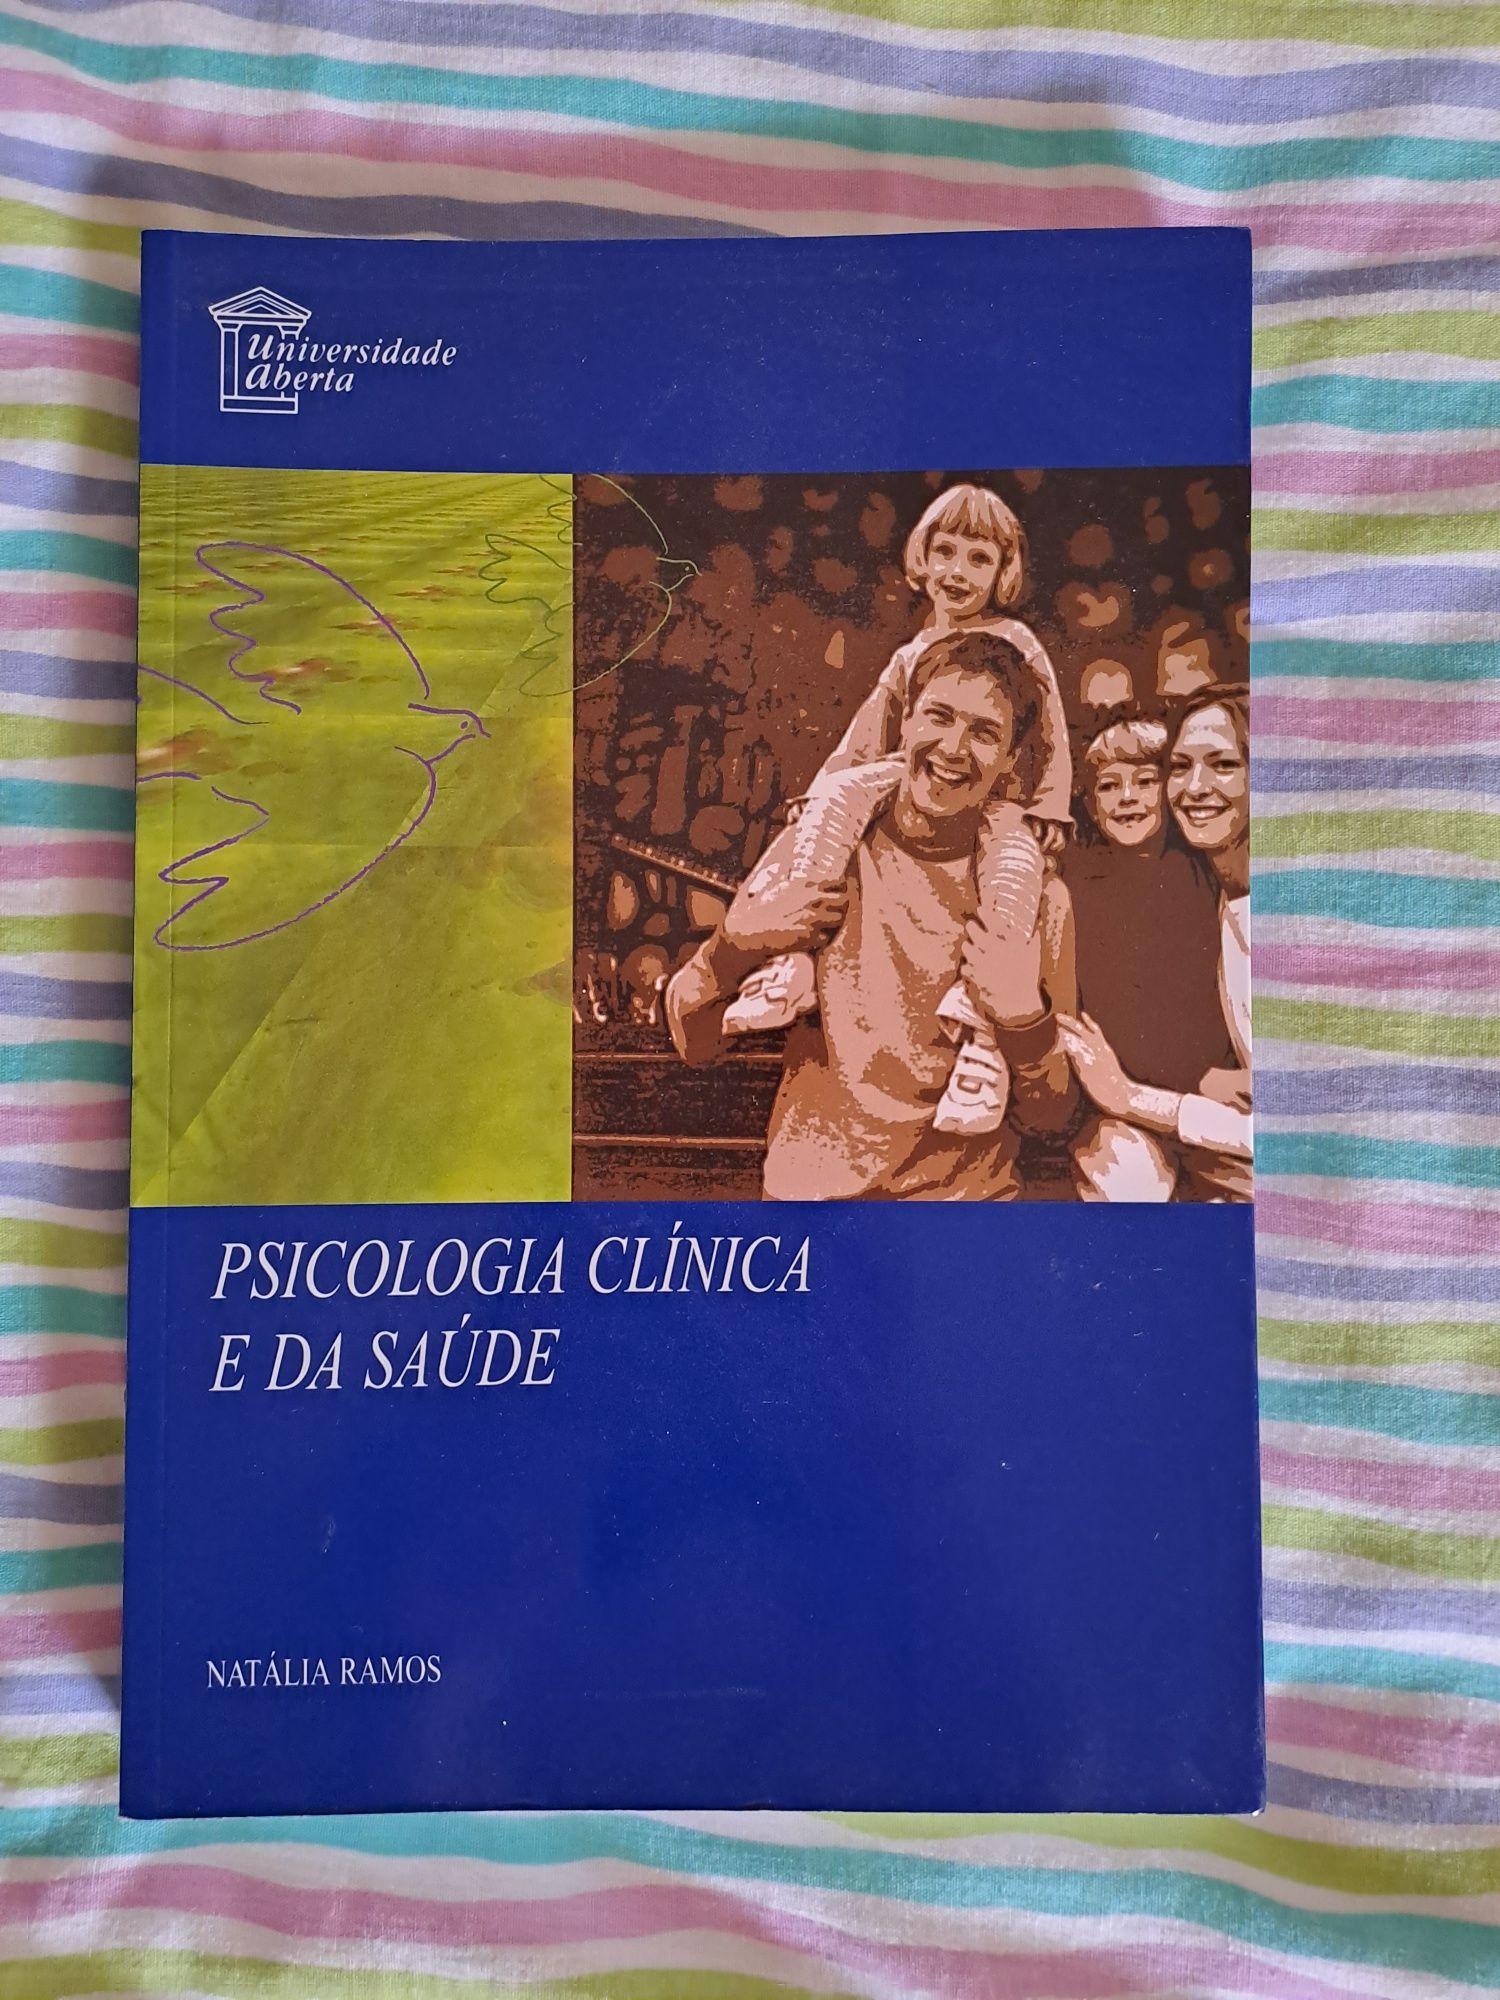 Livro "Psicologia Clínica e da Saúde" de Natália Ramos